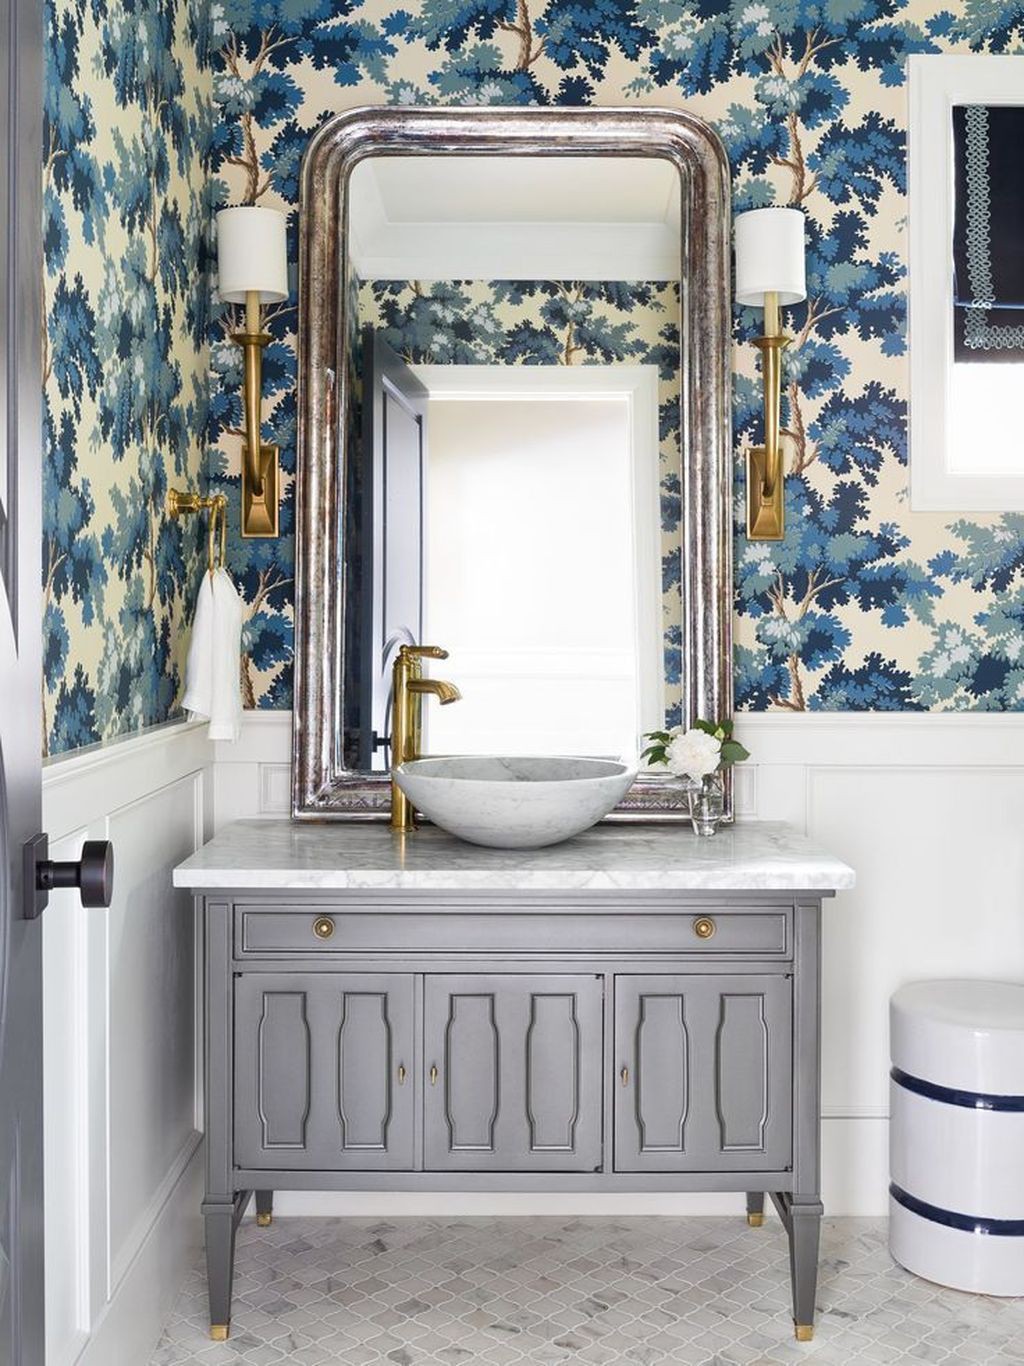 Hình ảnh phòng tắm hiện đại với giấy dán tường họa tiết cây xanh, bồn rửa tay độc đáo